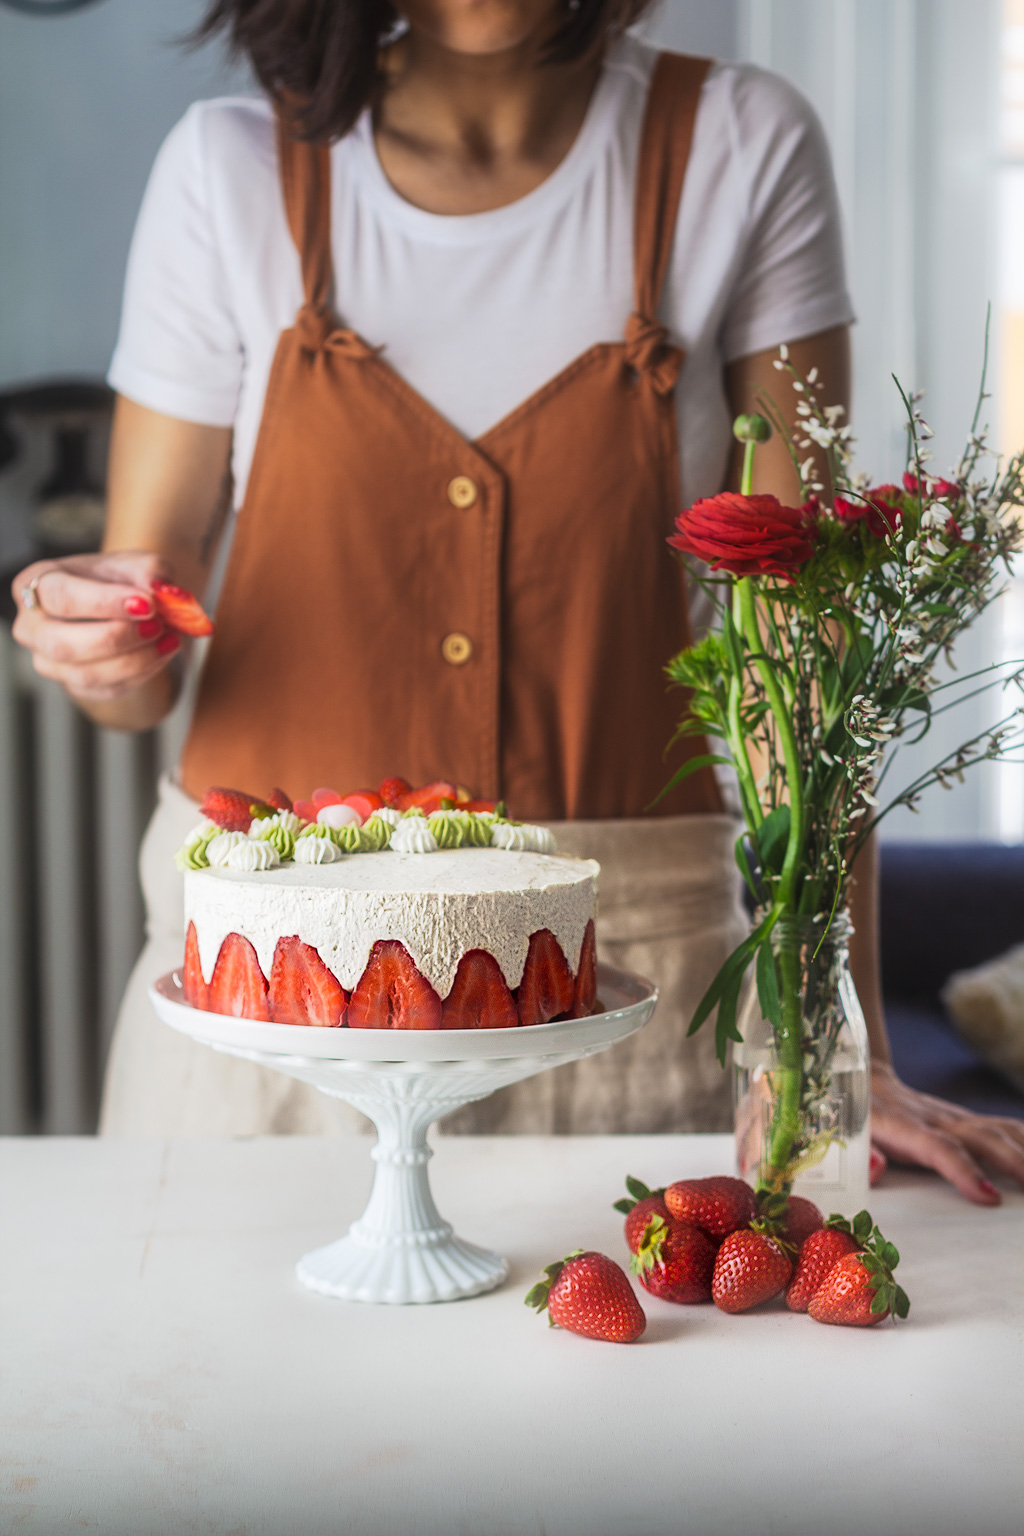 Recette d'un gâteau fraisier rhubarbe